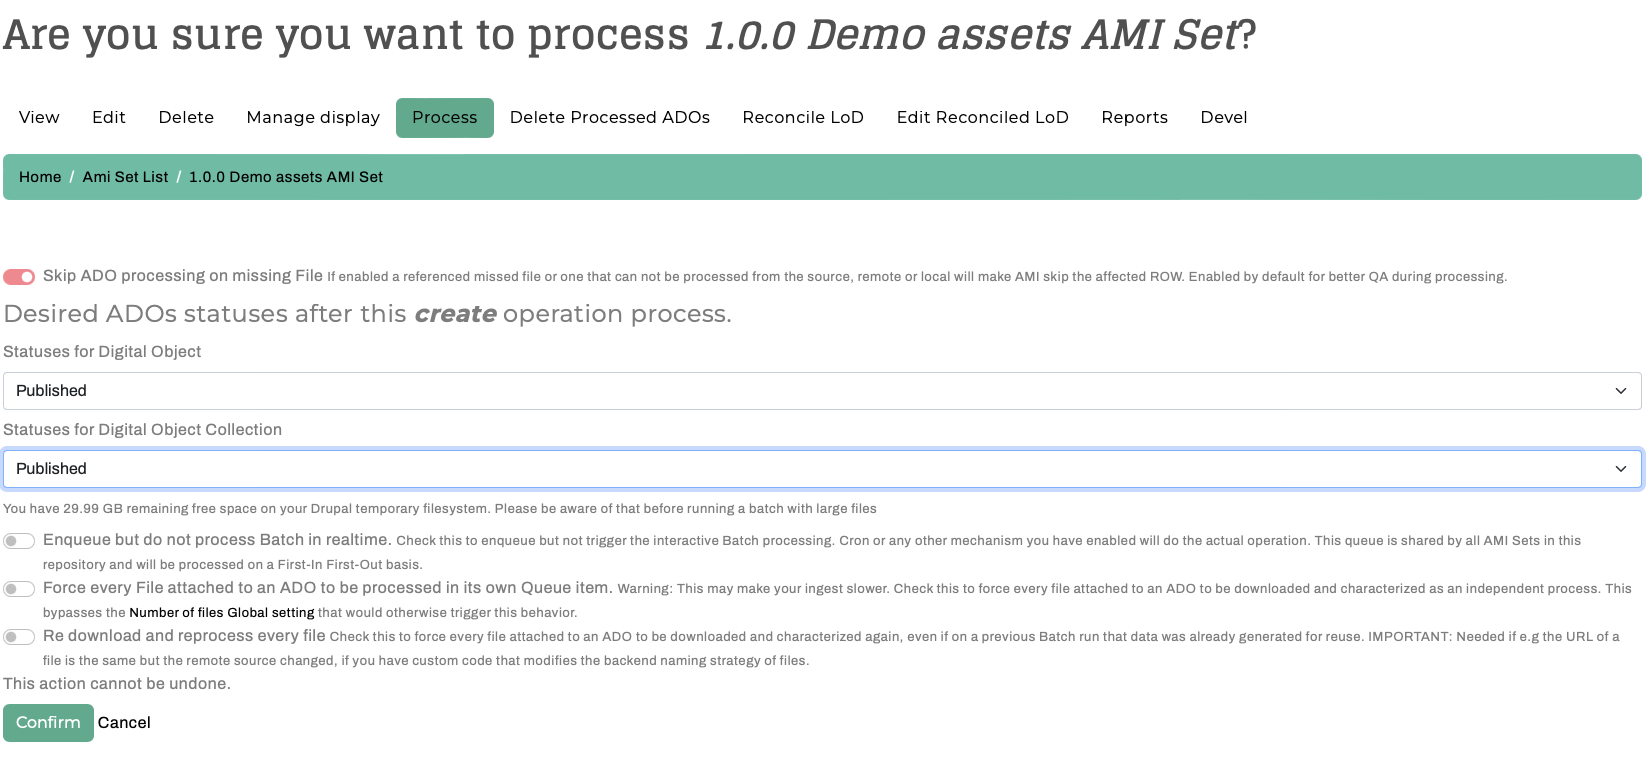 AMI Admin Set Process